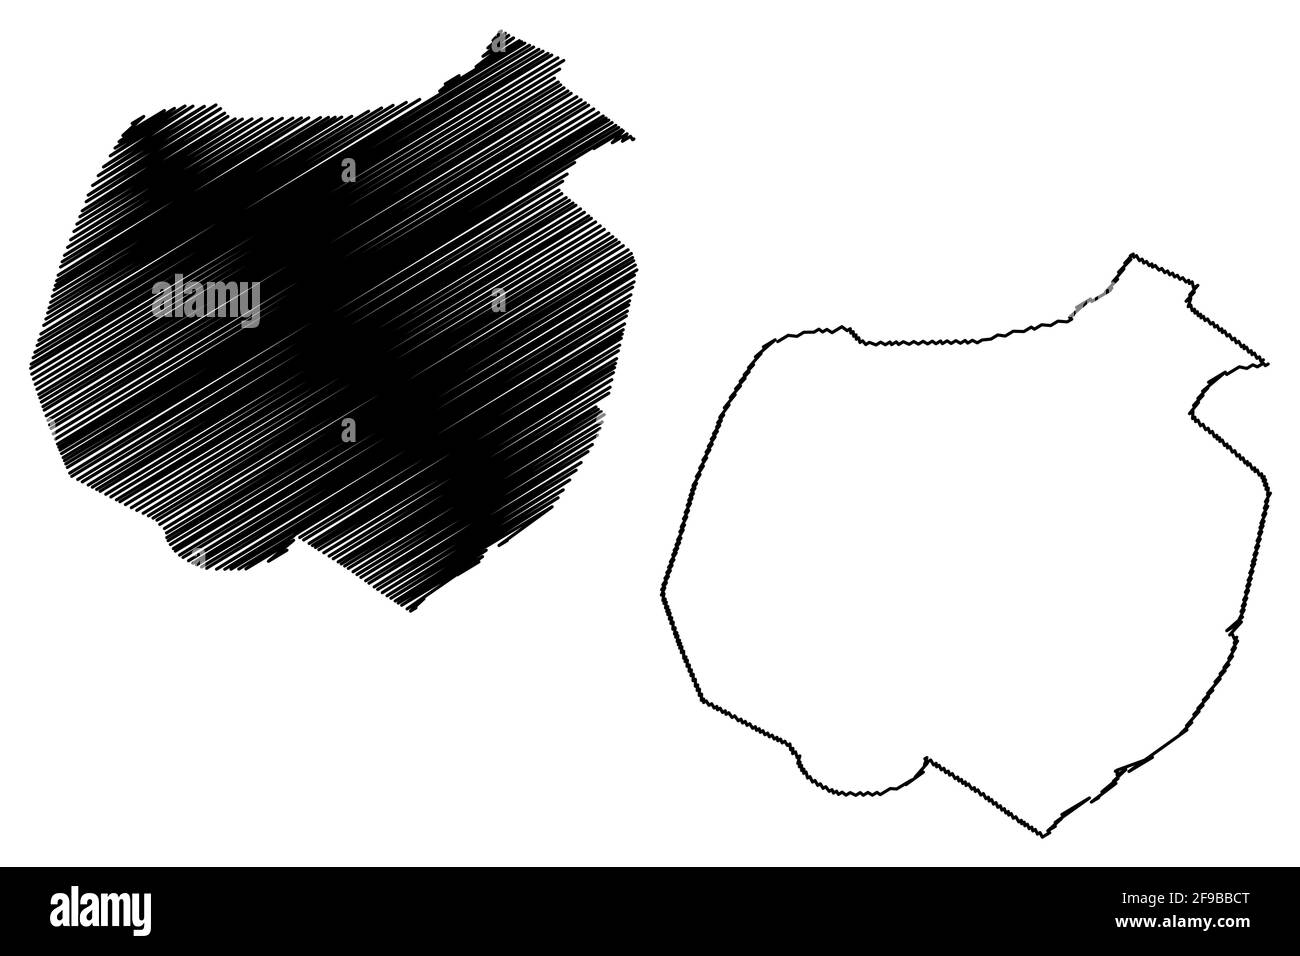 Staunton City County, Commonwealth of Virginia (città indipendente, contea degli Stati Uniti, Stati Uniti d'America, Stati Uniti, Stati Uniti, Stati Uniti), illustrazione vettoriale mappa, scriba Illustrazione Vettoriale